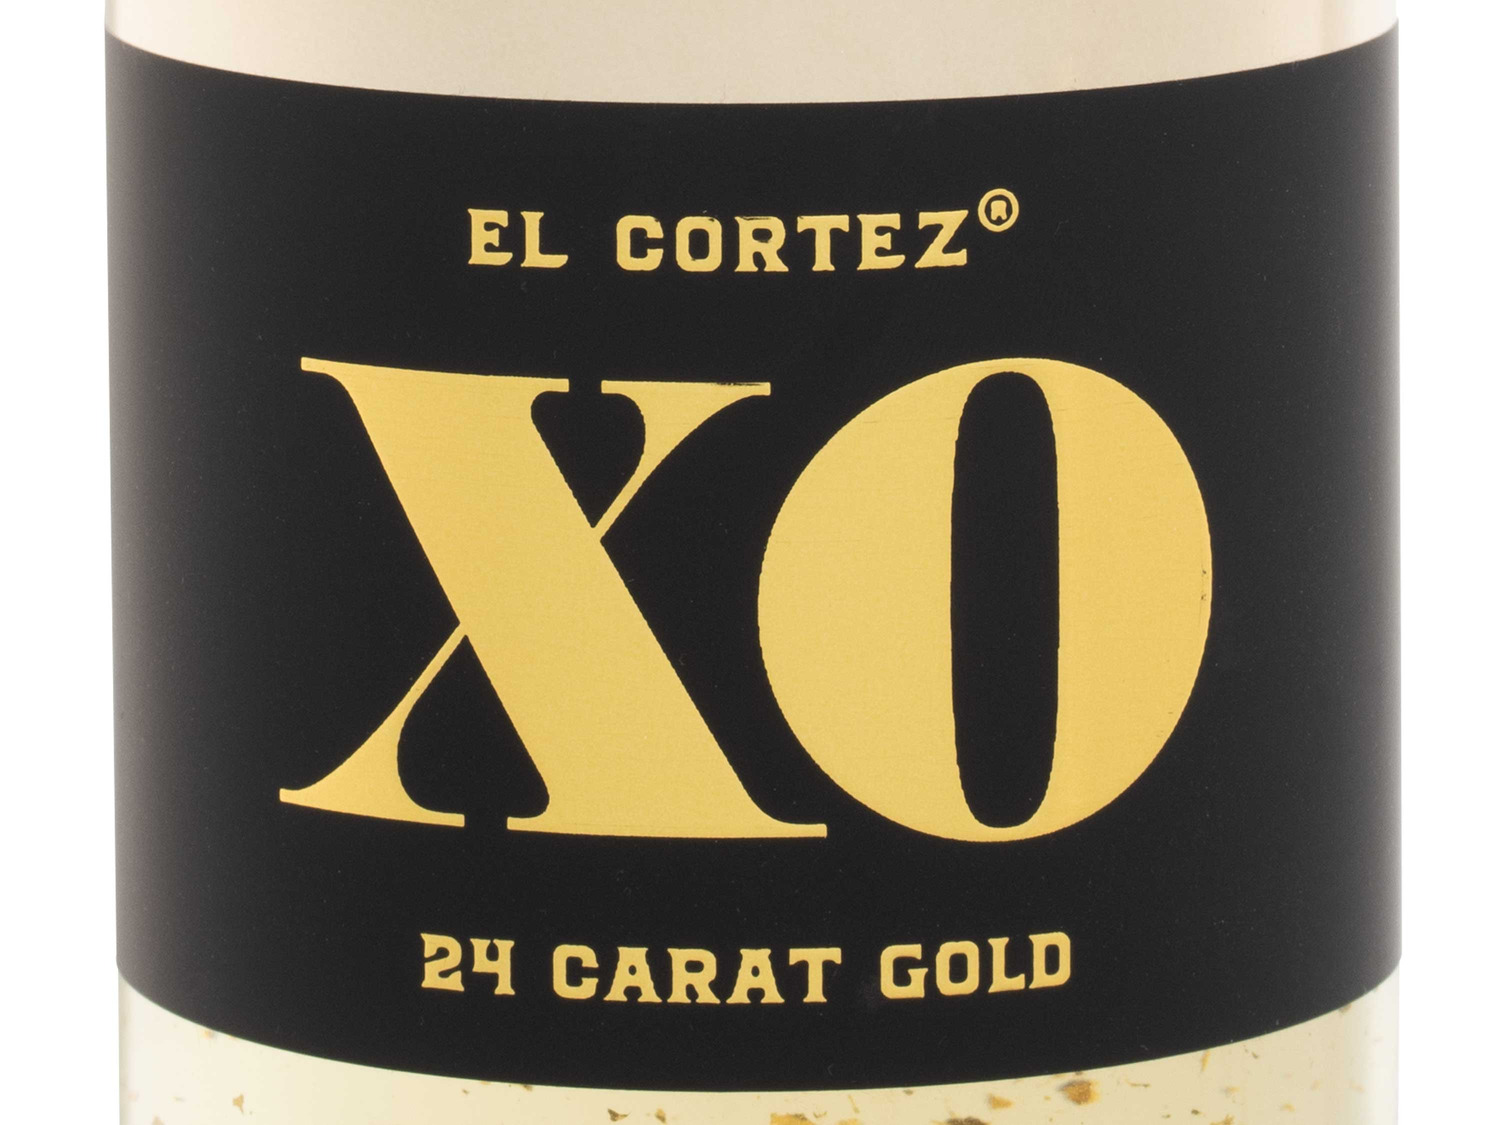 Gold, schaumweinhaltig… Cortez El Aromatisiertes XO 24K